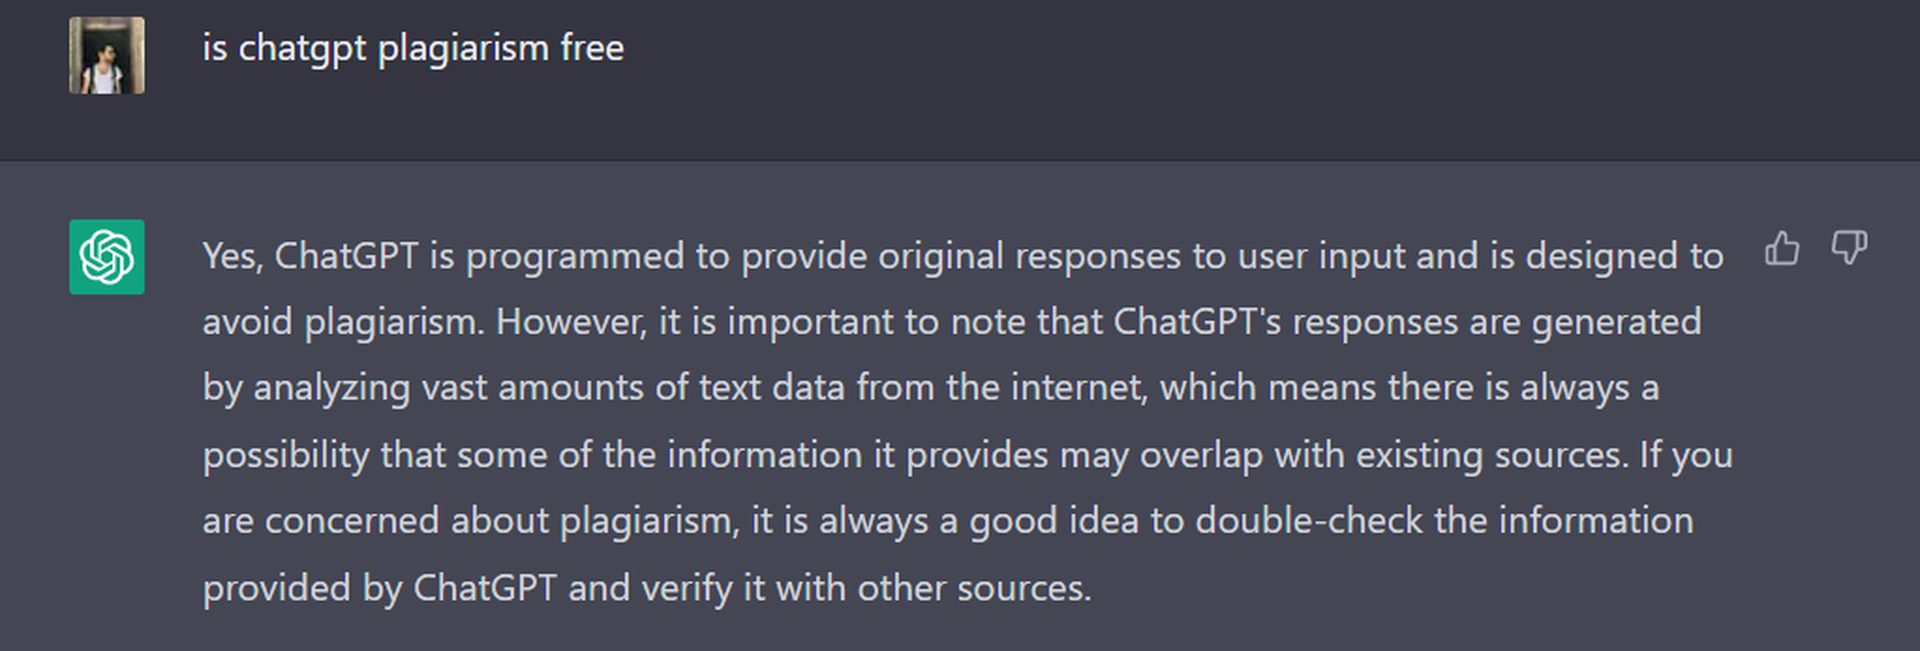 Είναι δωρεάν η λογοκλοπή ChatGPT; Το ChatGPT δεν περιλαμβάνει περιεχόμενο λογοκλοπής, ωστόσο δεν είναι απολύτως ηθικό. Επίσης, υπάρχουν ελεγκτές λογοκλοπής για τον εντοπισμό του.